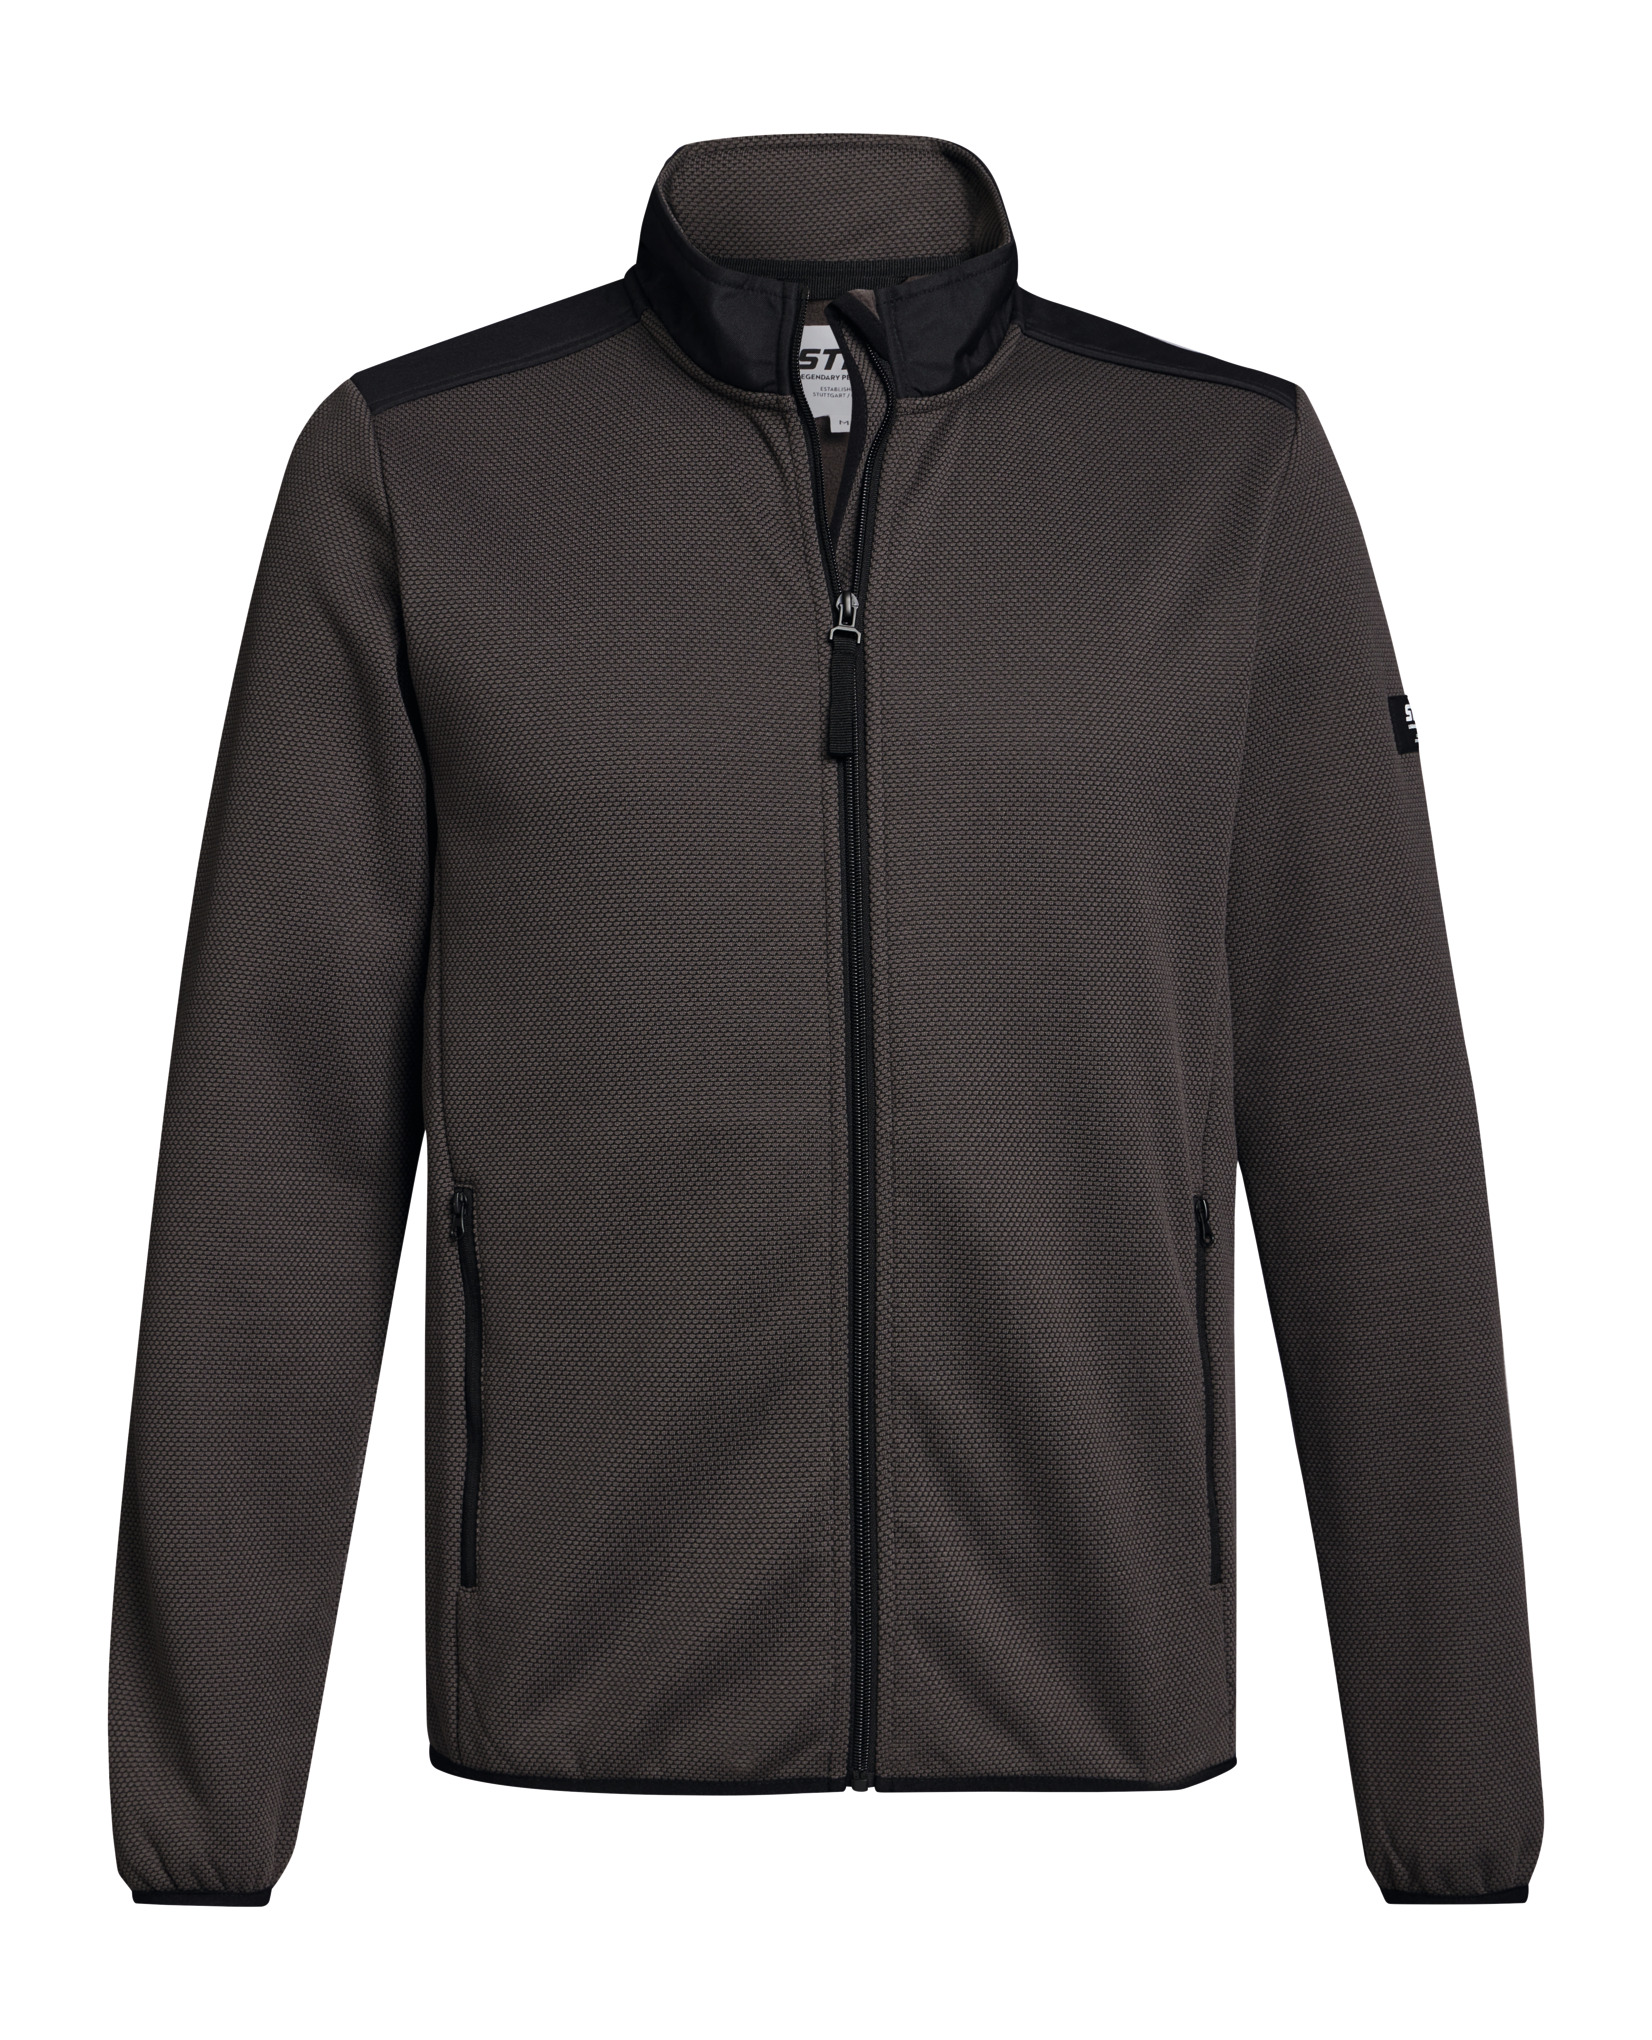 PERFORMANCE fleece jacket - grey | STIHL